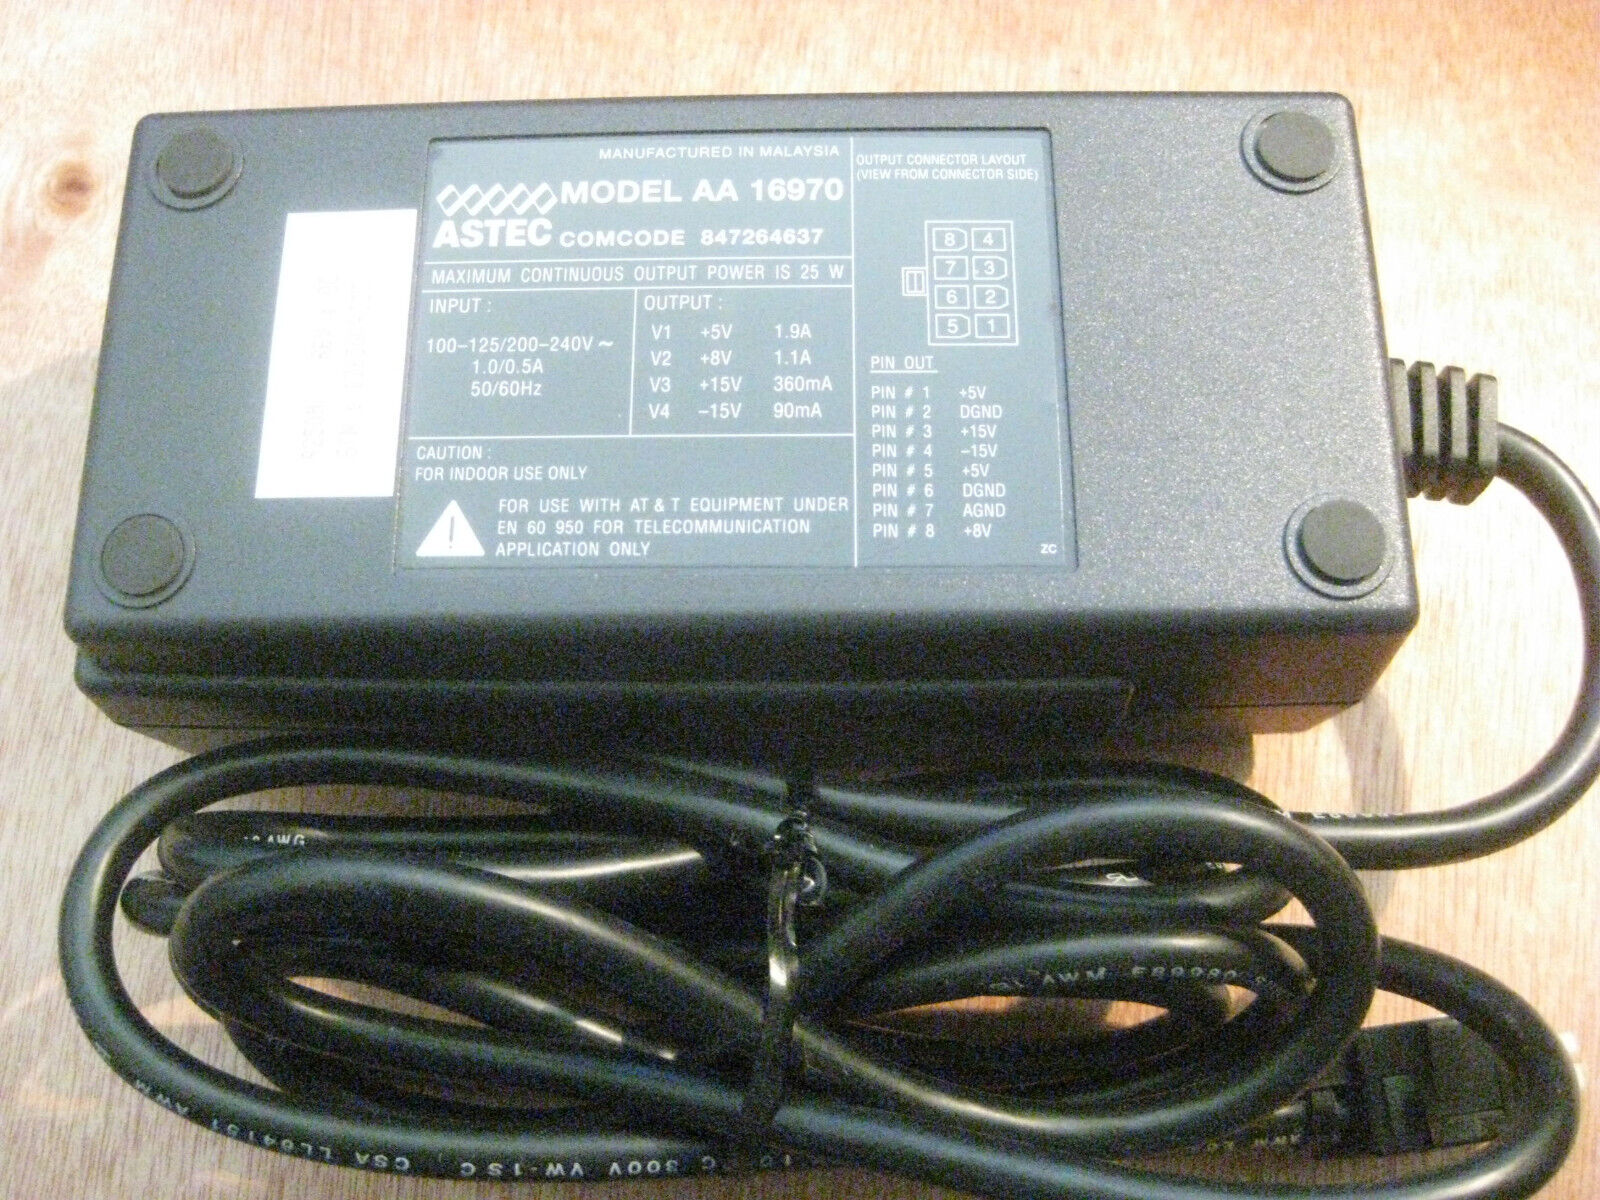 ASTEC AA16970 Power Supply 5v/1.9a - 8v/1.1a – 15v/360ma NEW